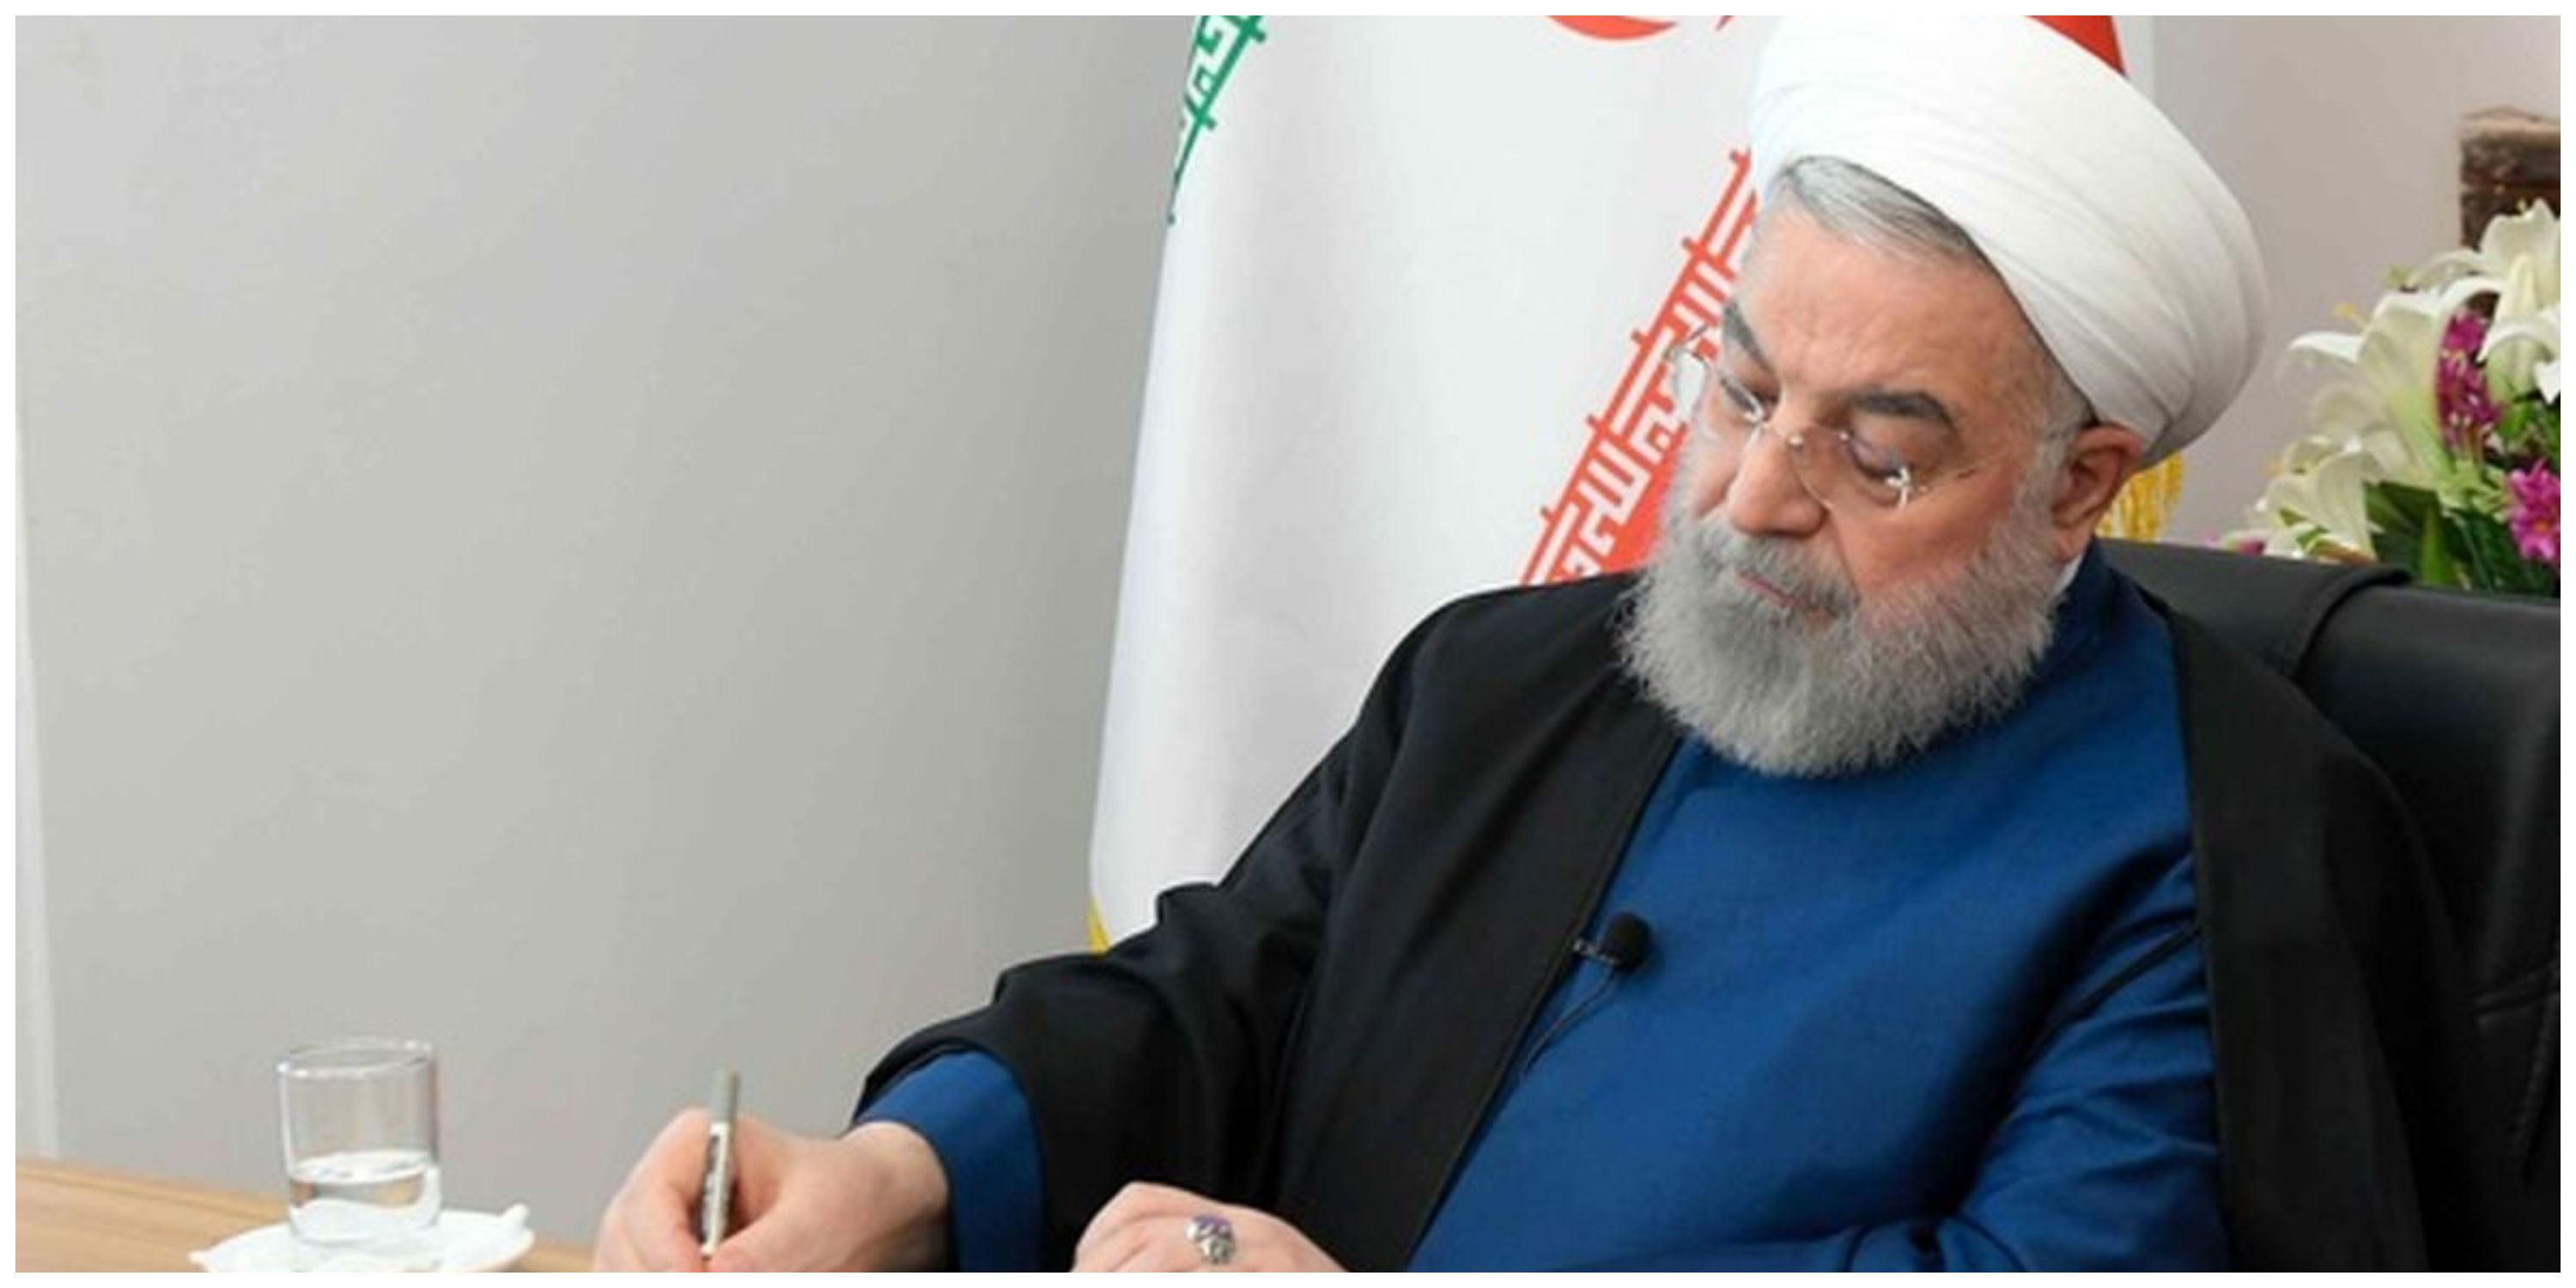 اولین تصویر از دیدار حسن روحانی و مسعود پزشکیان + عکس